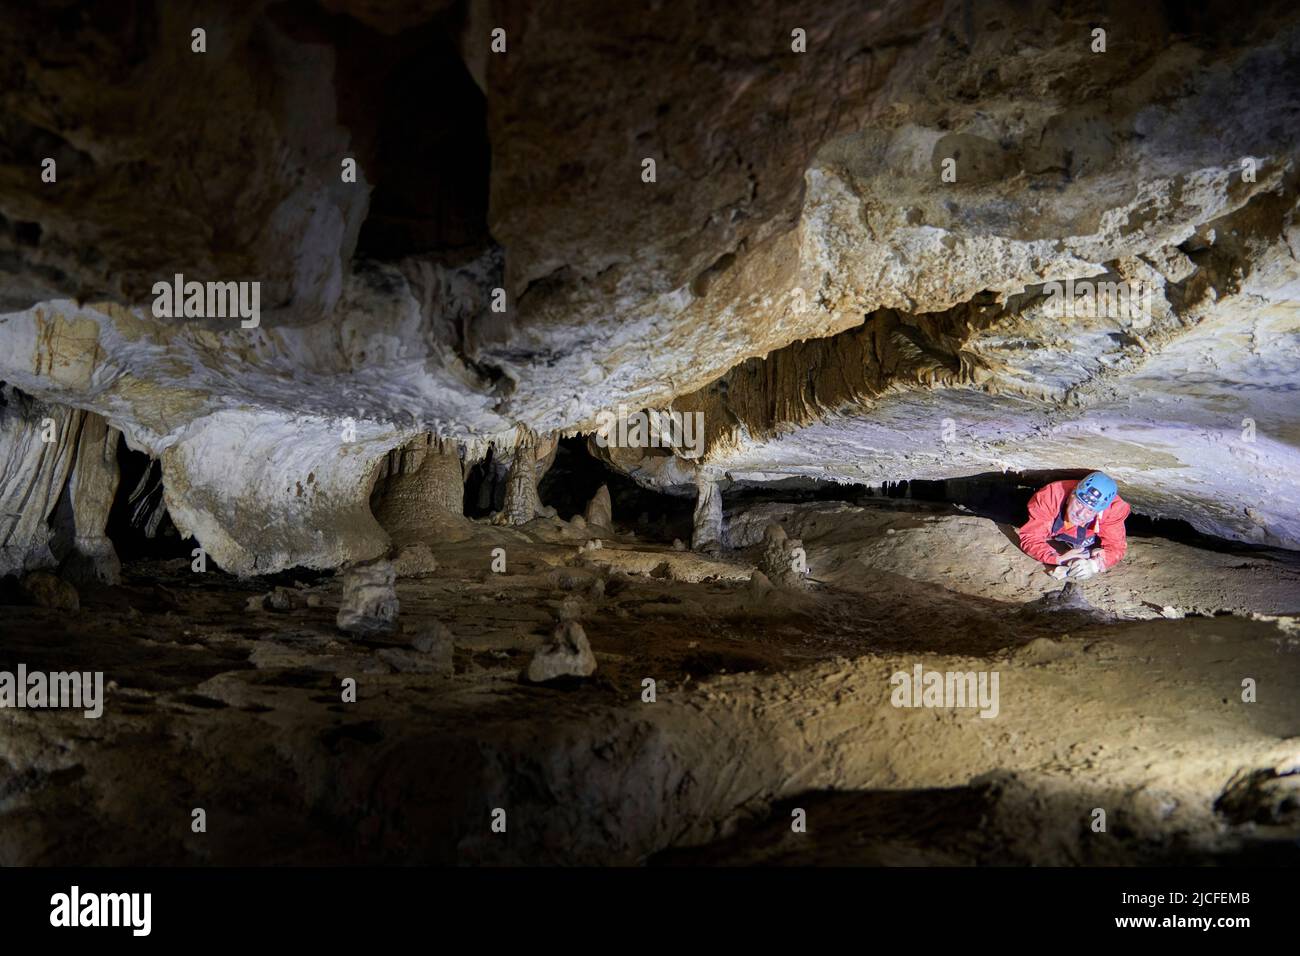 Cave explorer in the Grotto de la Tuilerie in France Stock Photo